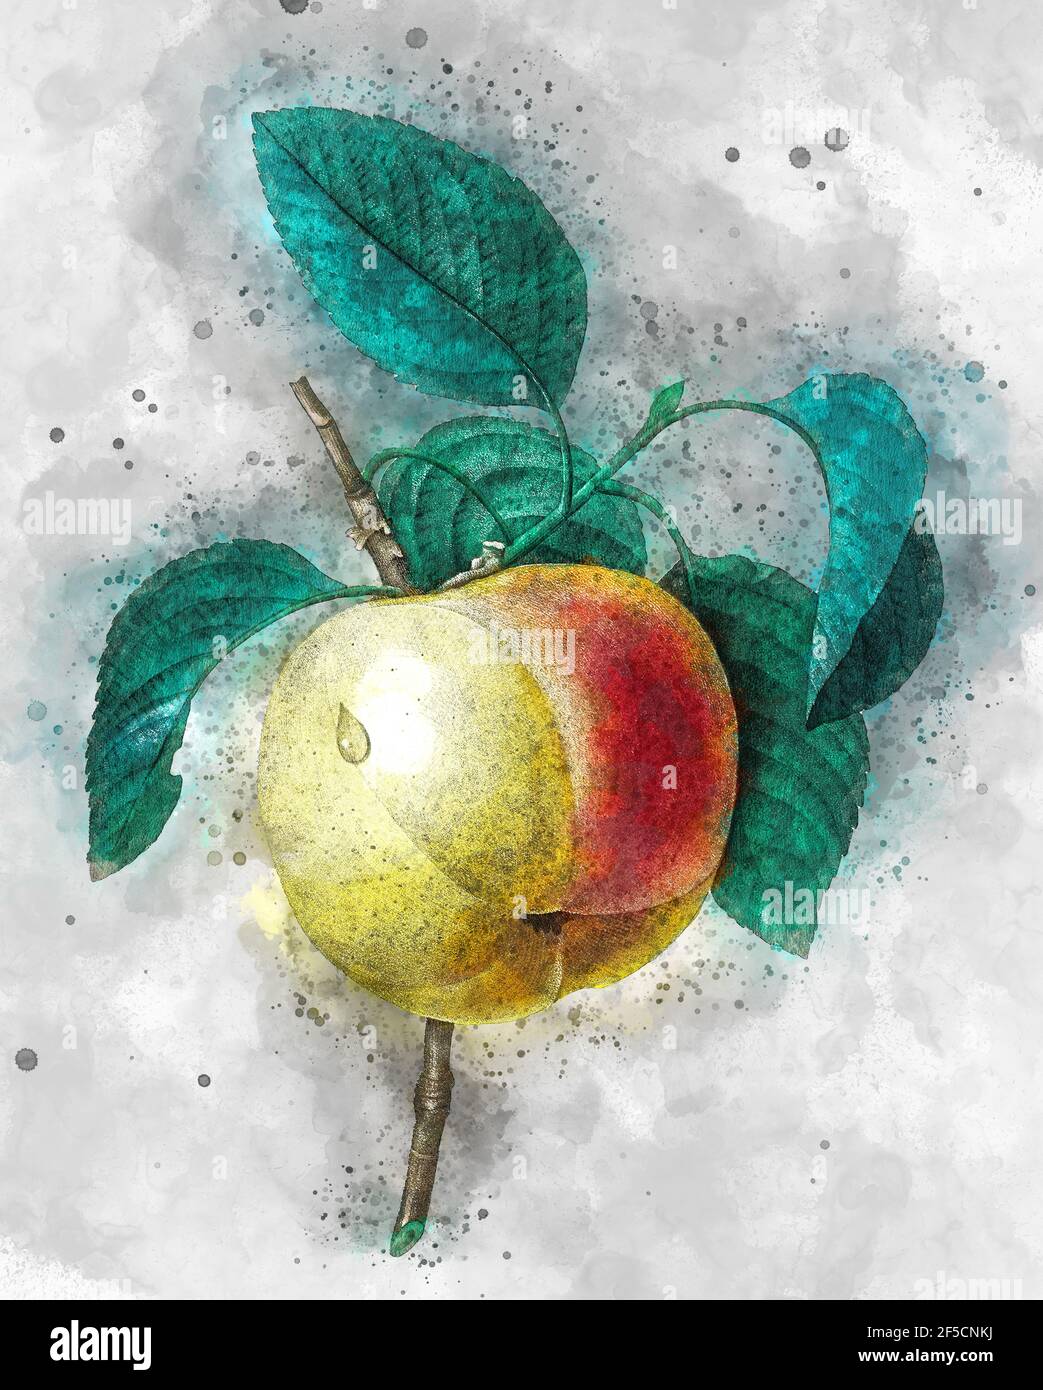 Digital verbesserte Abbildung einer handgemalten Gravurillustration eines Calville Blanc (Apfel) aus dem 19th. Jahrhundert von Pierre-Joseph Redoute. Veröffentlicht in Choi Stockfoto